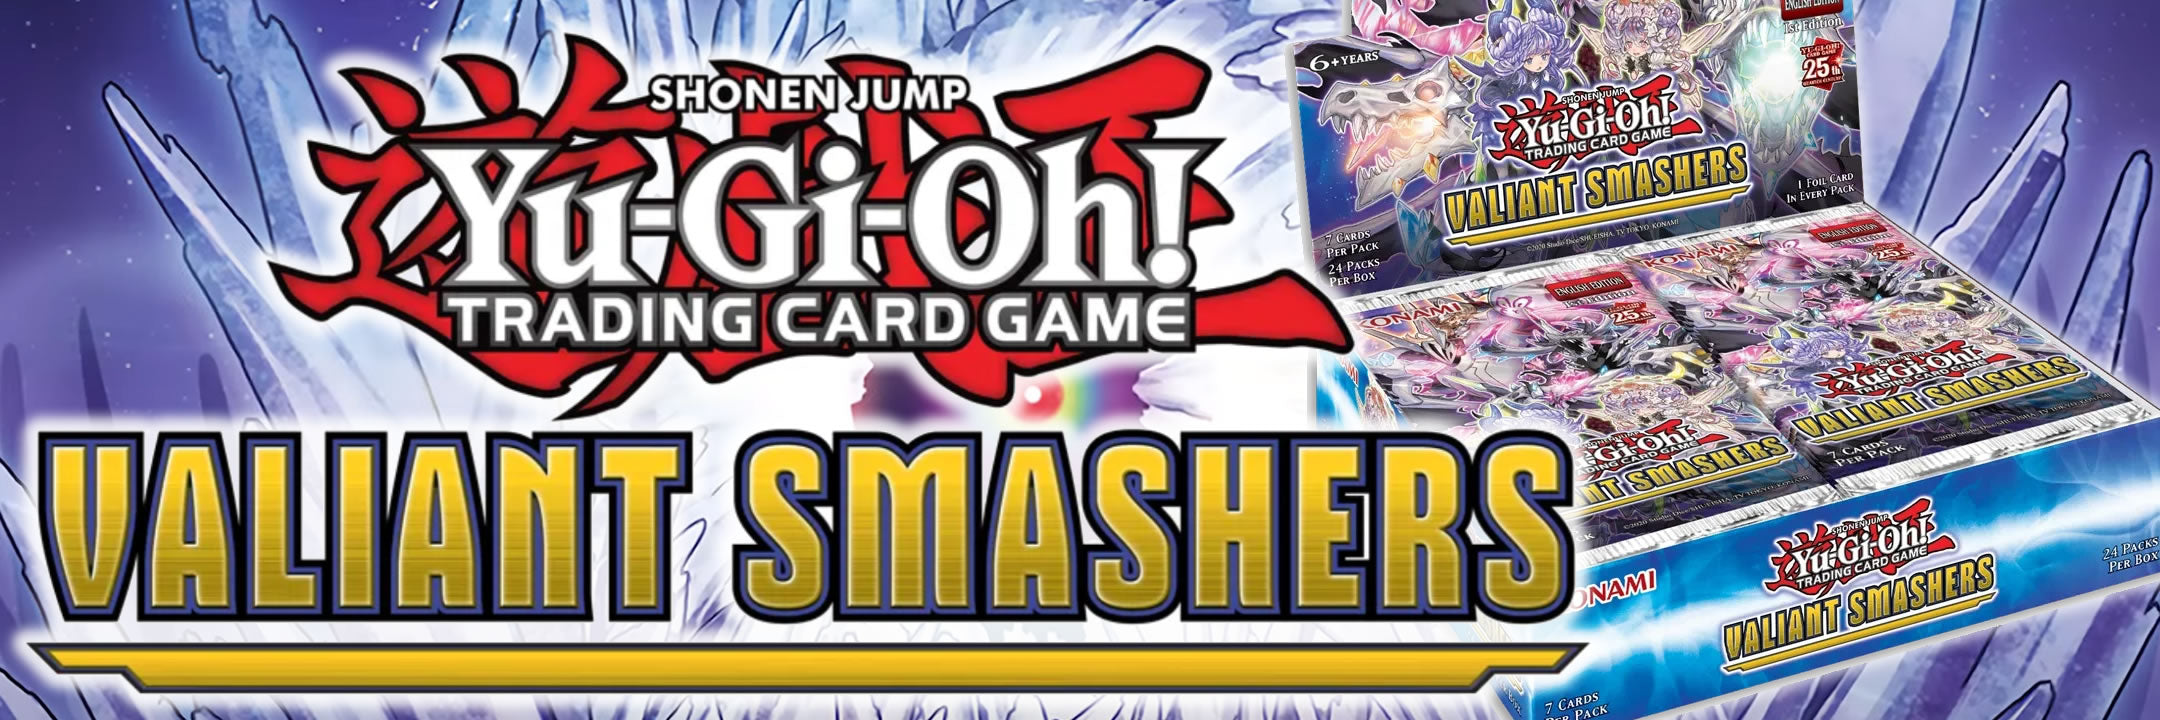 Yu-Gi-Oh! Trading Card Game - Valiant Smashers